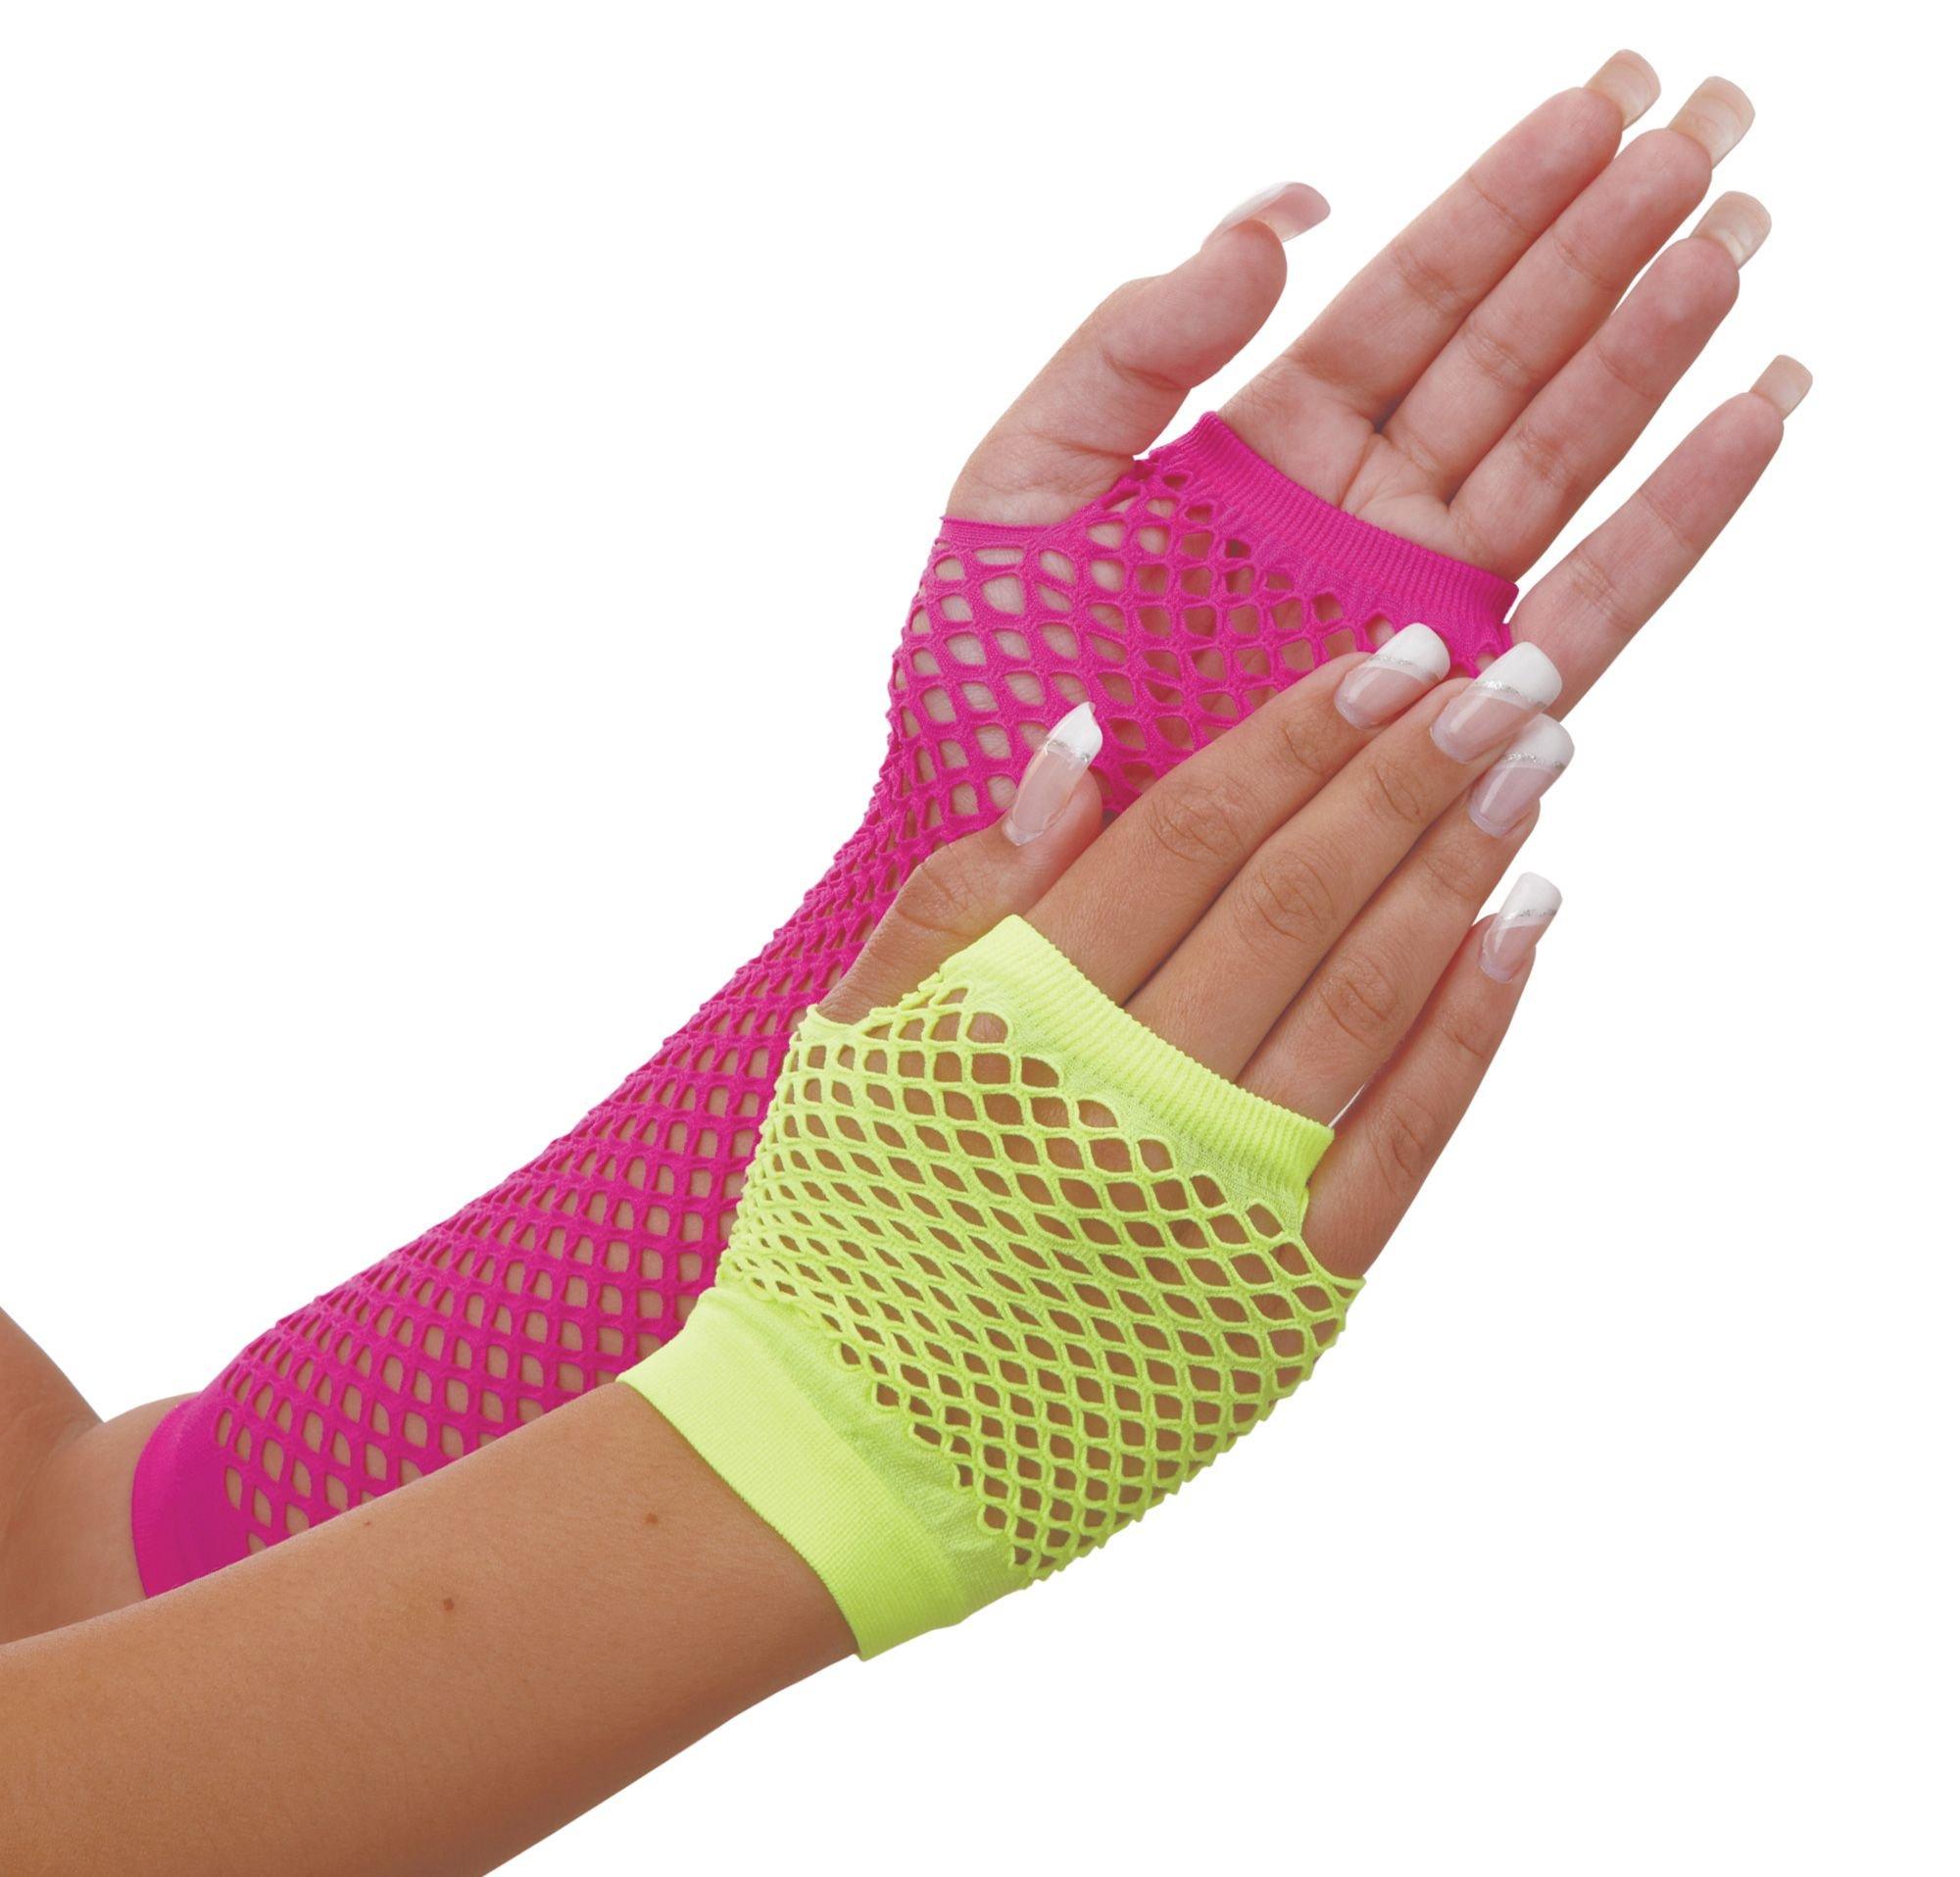 Neon Fishnet Glove